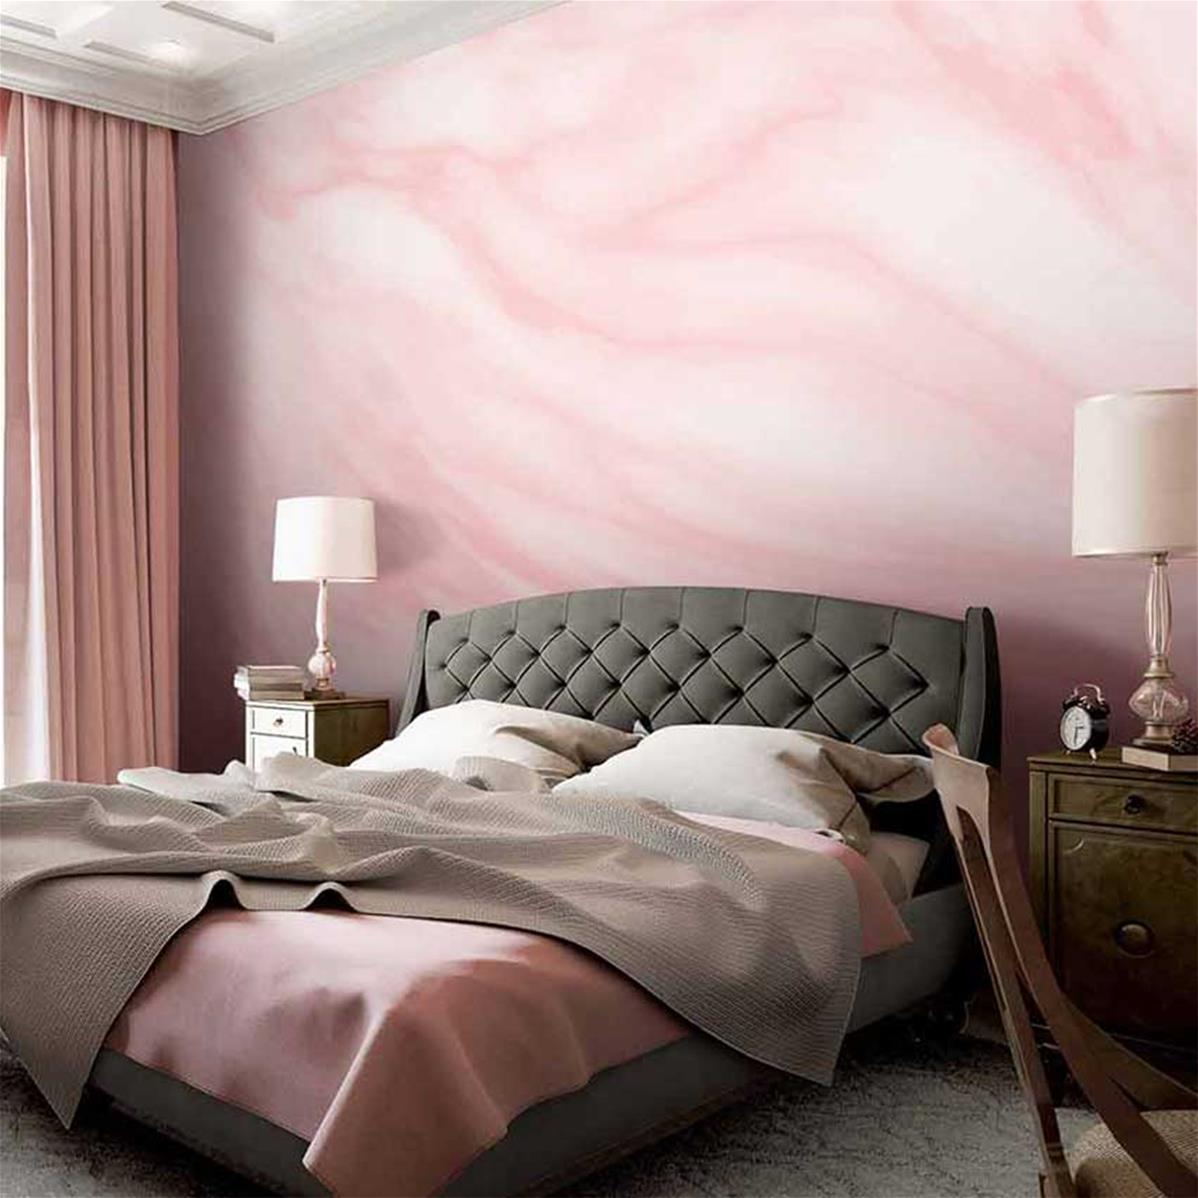 Papier peint luxe aspect marbre rose Arosa